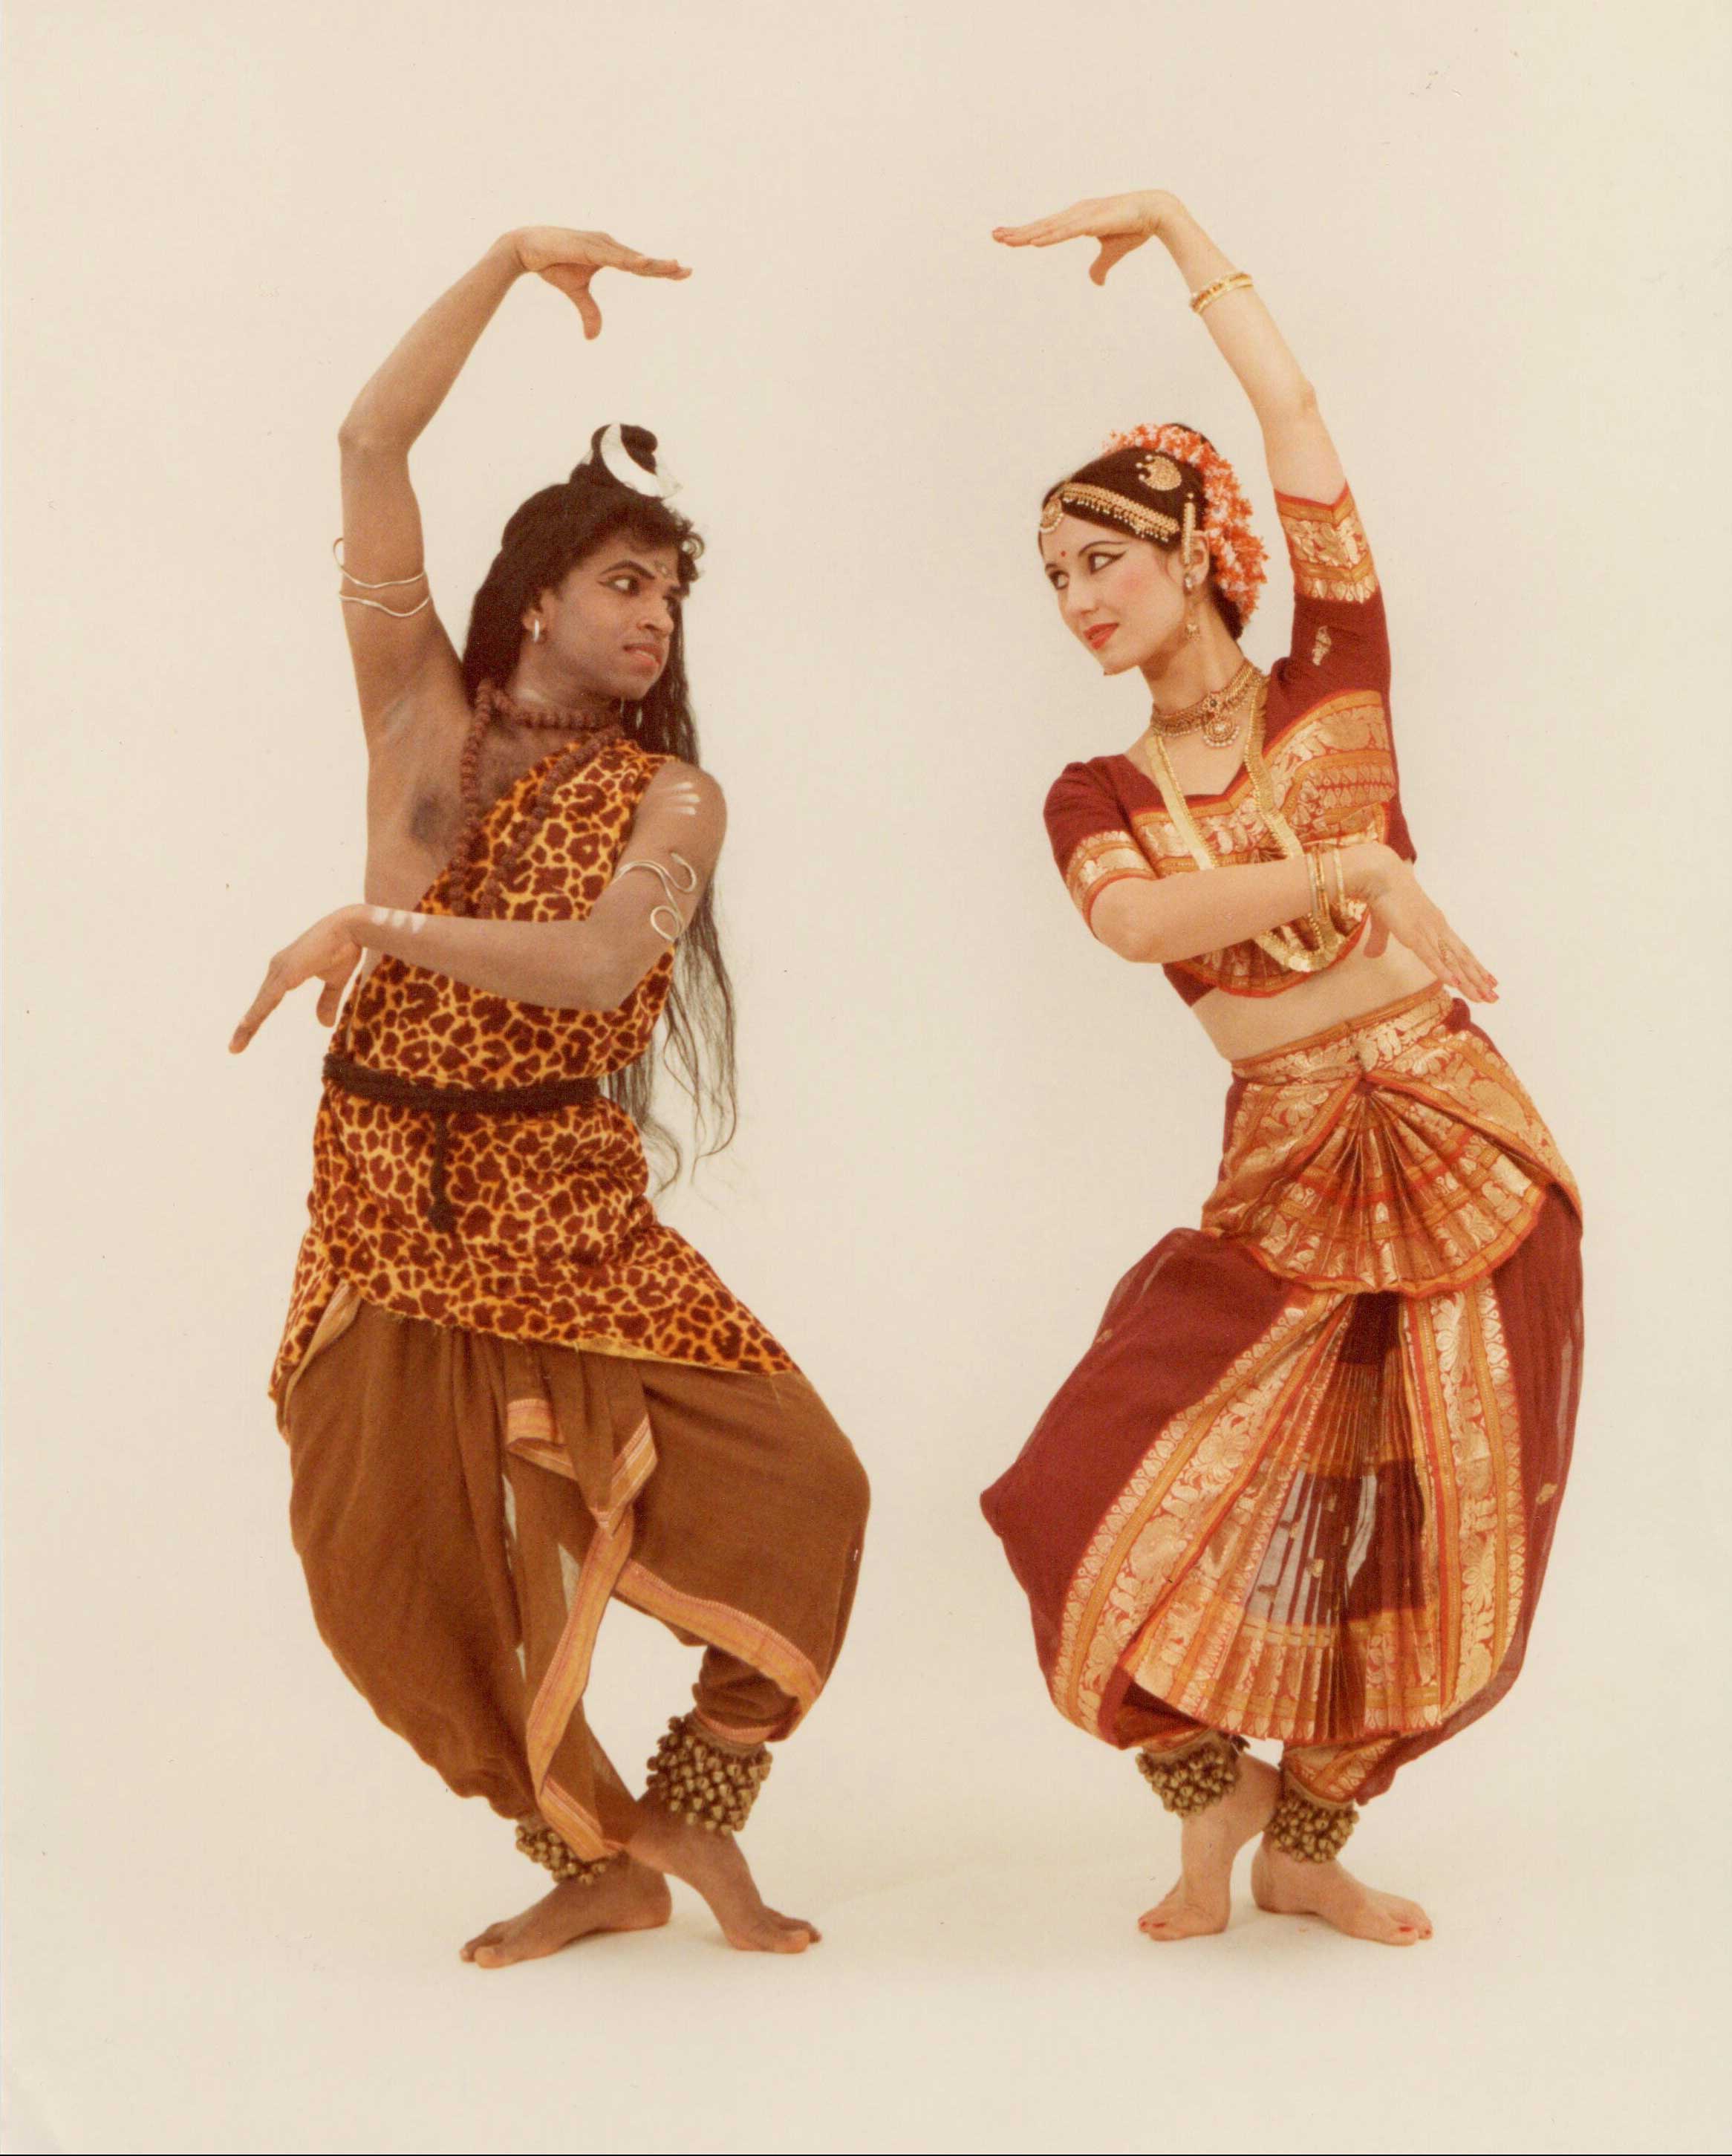 Keshava und Esther als Shiva und Parvati